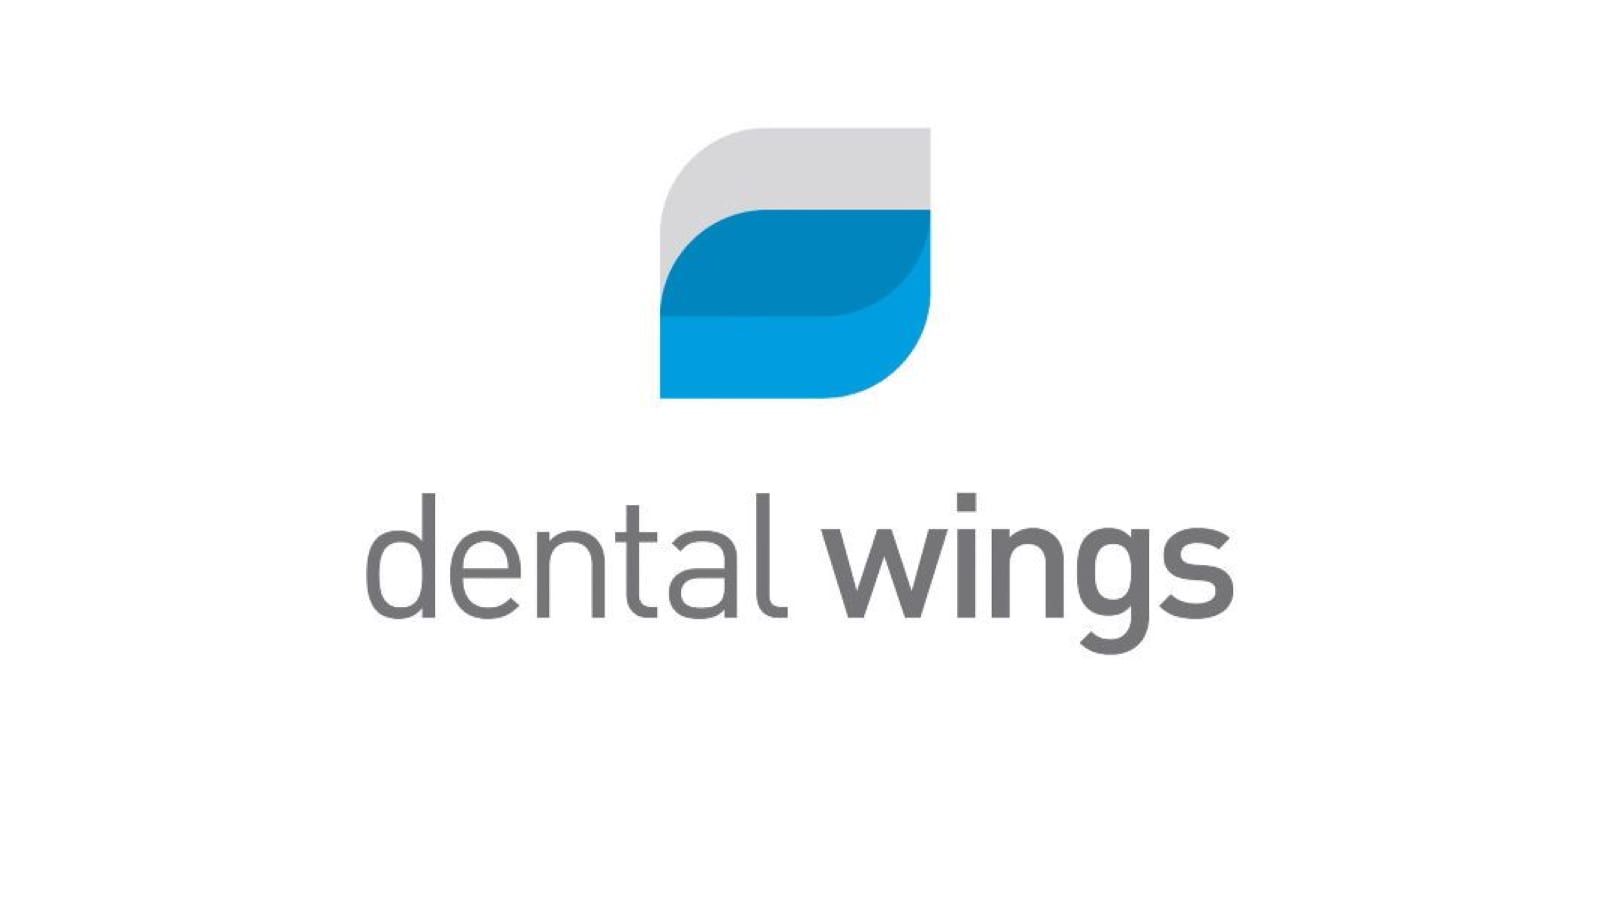 Dental wings